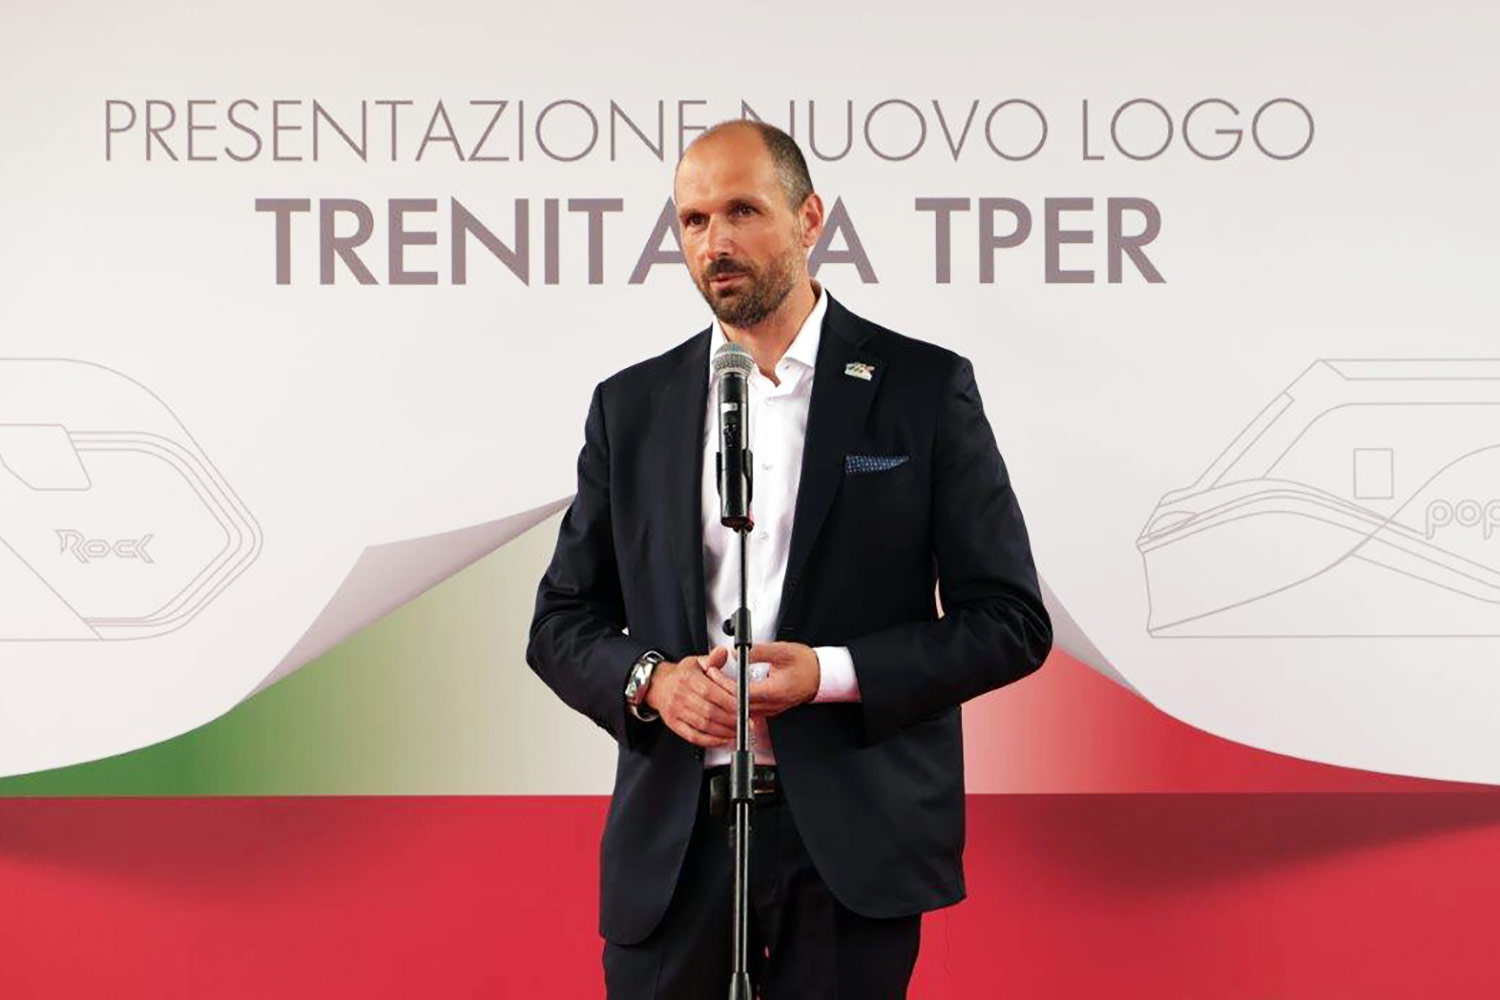 Alessandro Tullio, Amministratore Delegato Trenitalia Tper